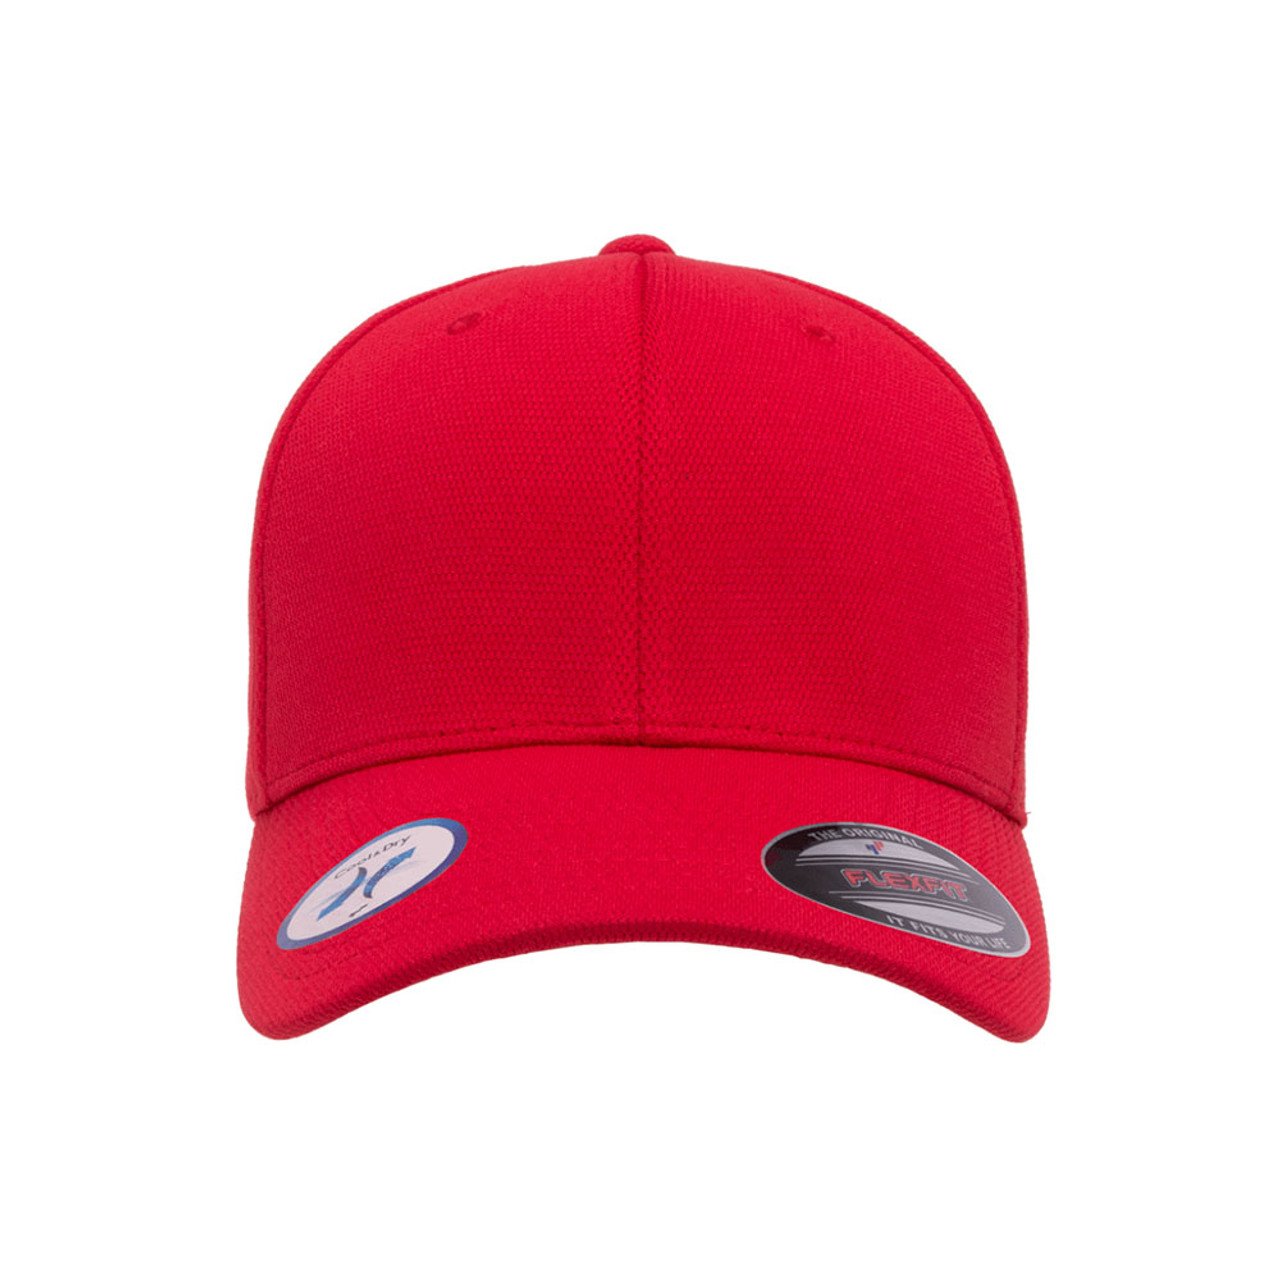 Flexfit Cool & Dry Performance Jac Cap The - Dozen One Hat 